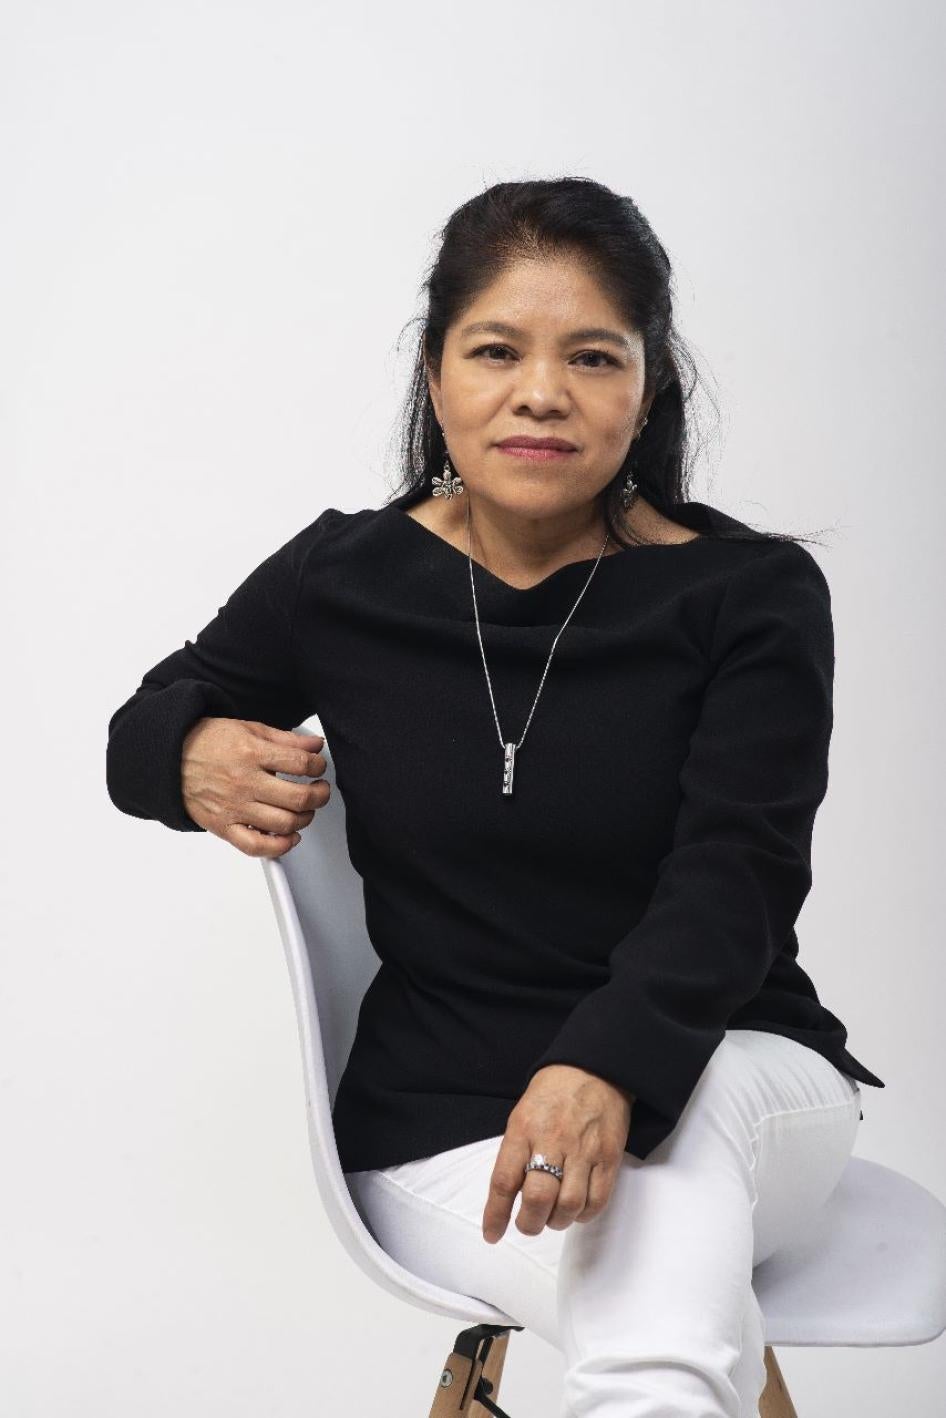 Marcelina Bautista, Centro de Apoyo y Capacitación para Empleadas del Hogar (CACEH), México.